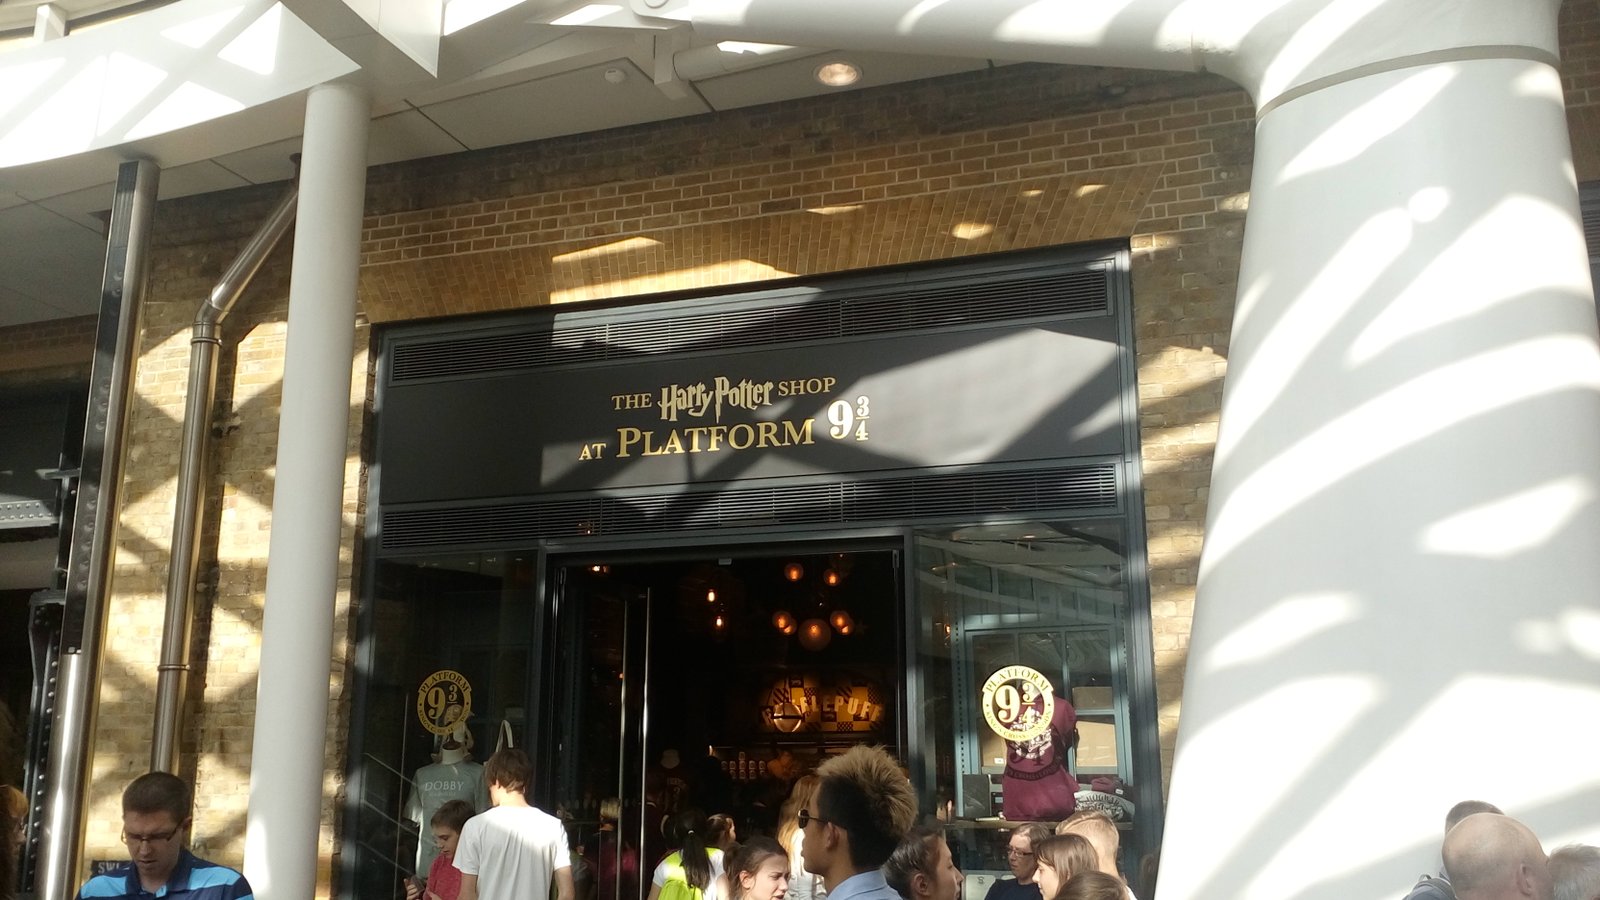 Επίσκεψη στην πλατφόρμα 9 ¾ και στο Harry Potter shop του Λονδίνου